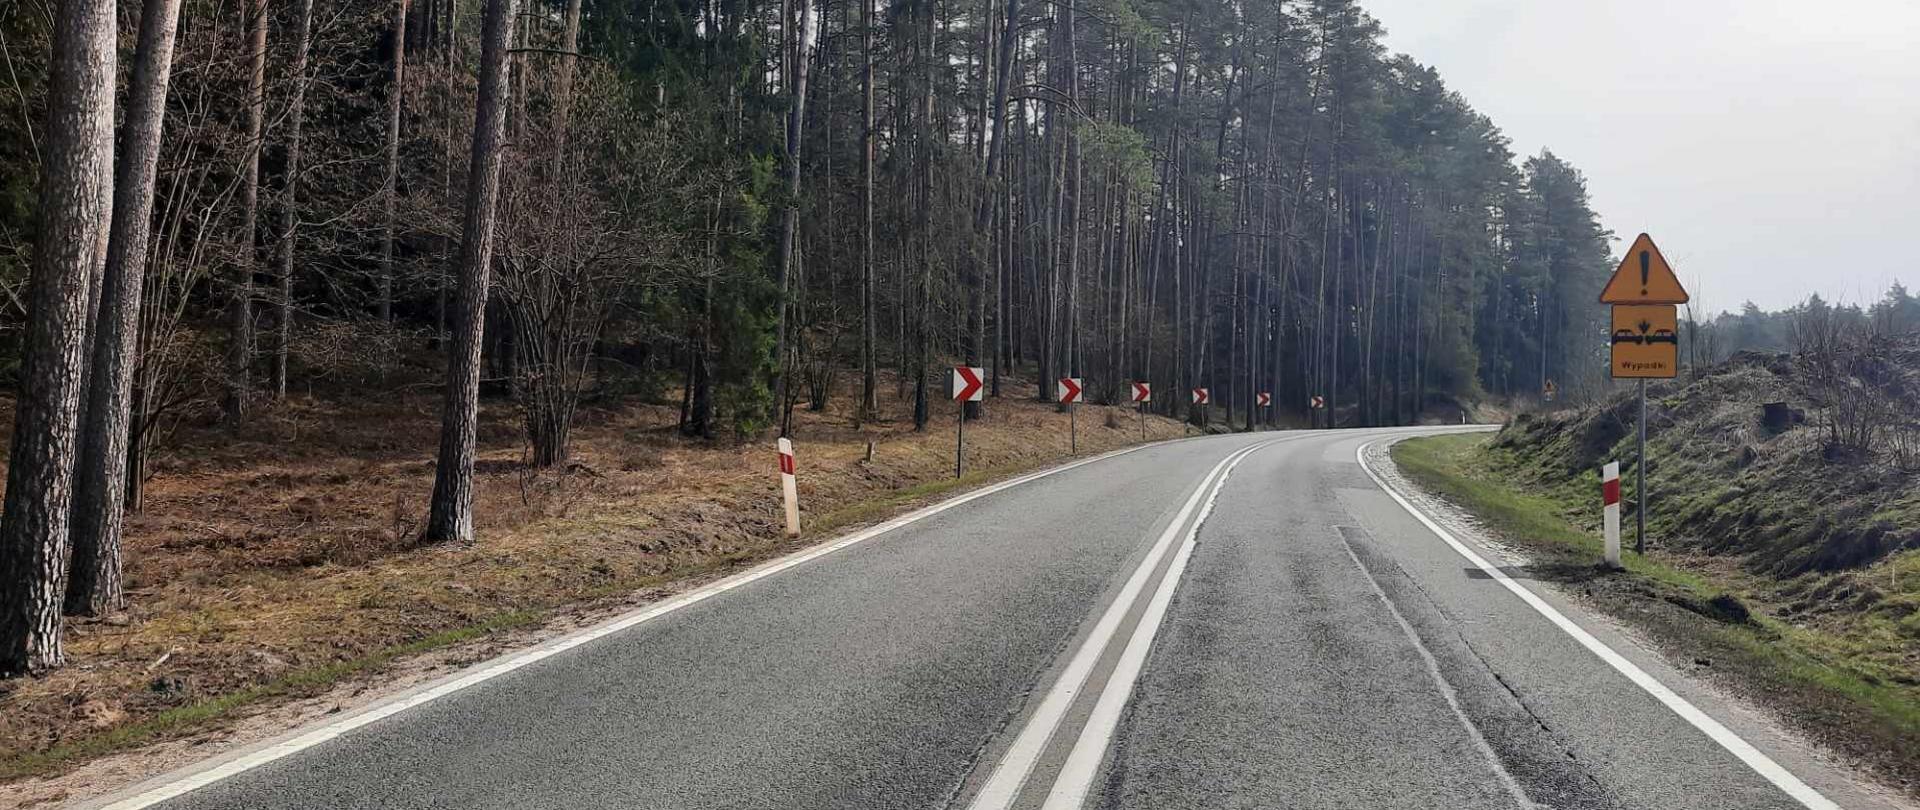 Droga asfaltowa biegnie ostrym łukiem przez las. Po prawej stronie znak drogowy ostrzegający przed wypadkami.